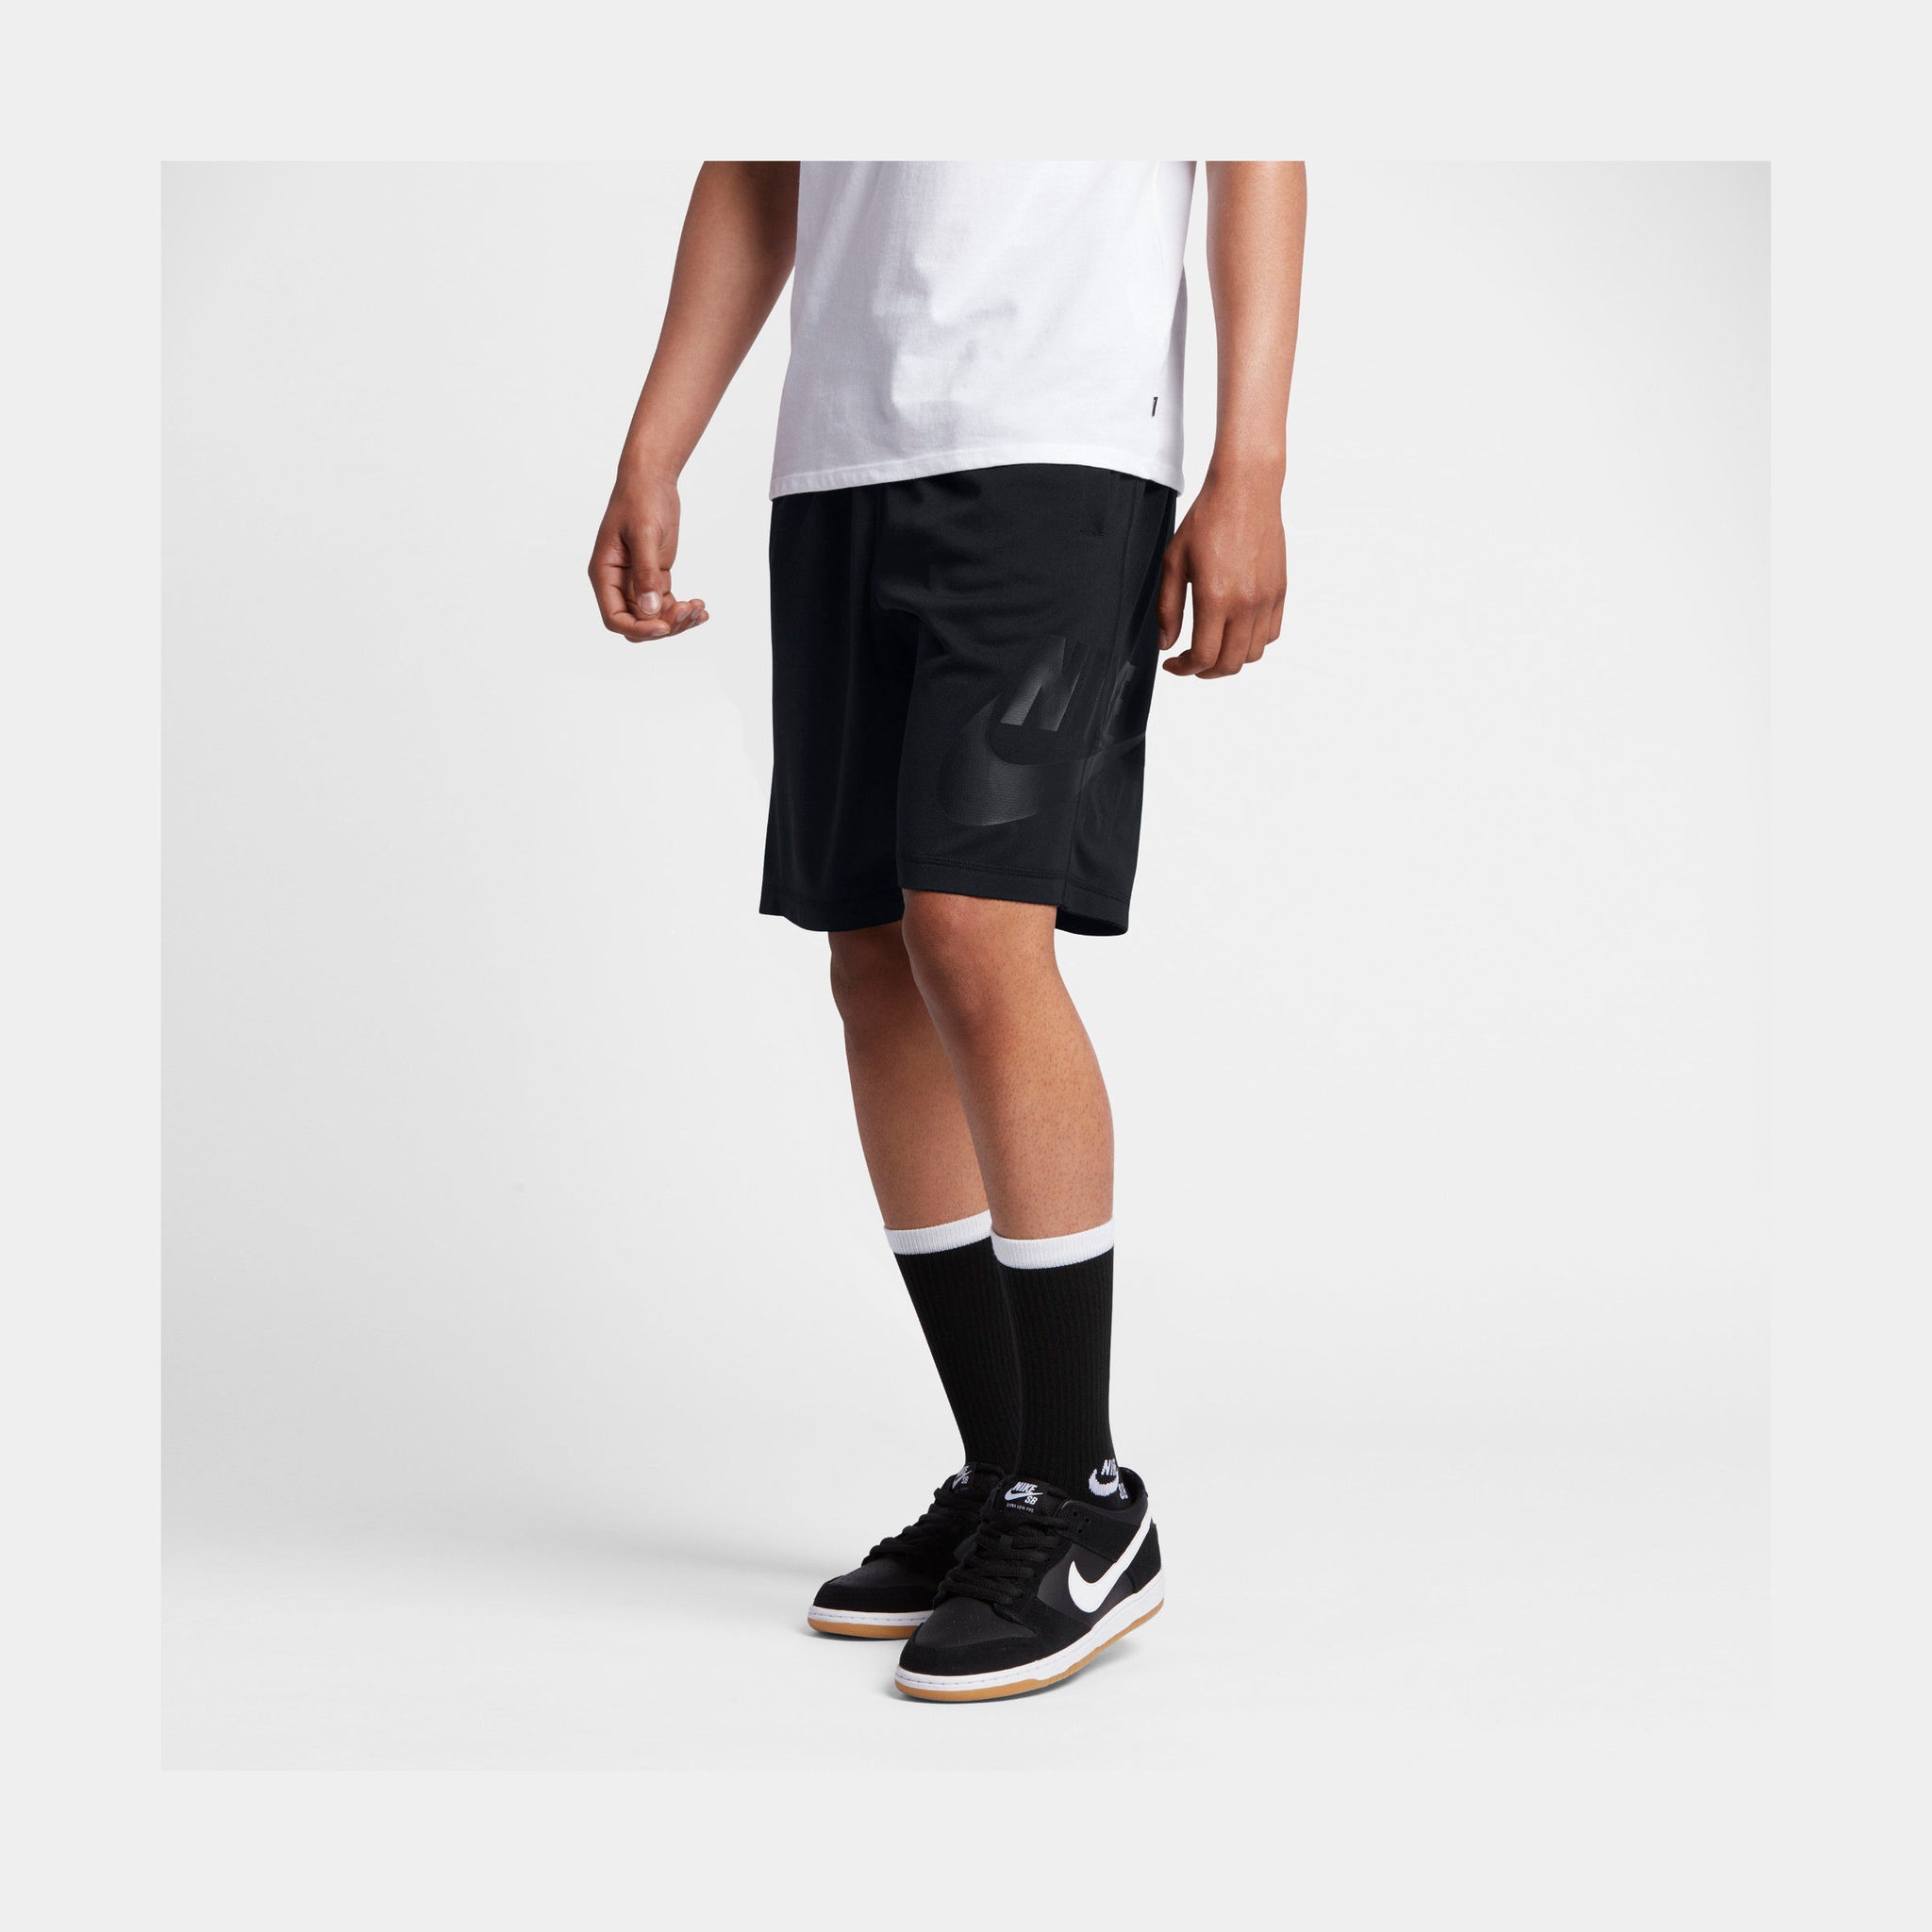 Nike SB Dry-Fit Mens Shorts Black Black 829603-013 – Shoe Palace